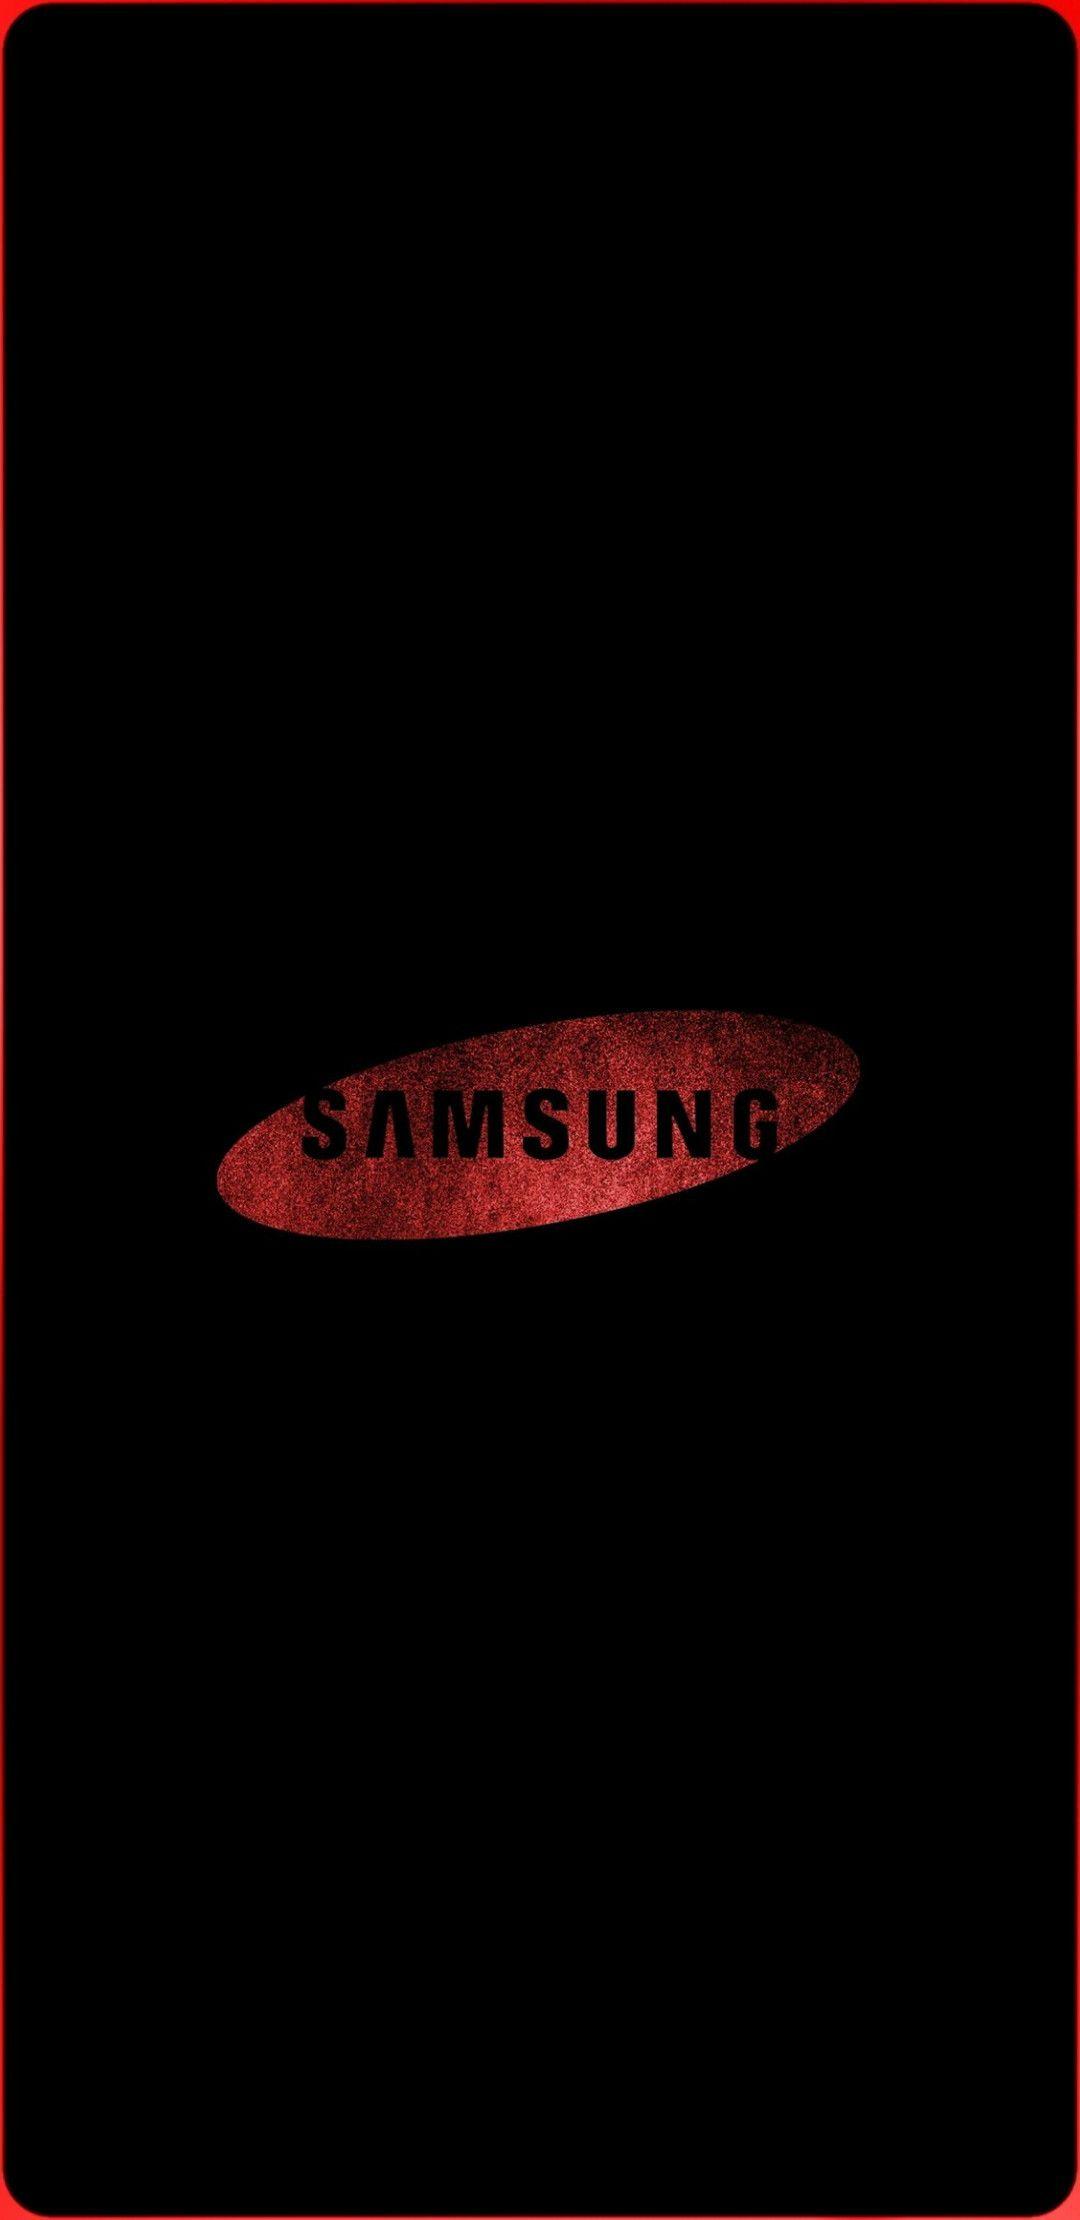 Hãy thưởng thức hình nền logo Samsung cực đẹp với thiết kế tinh tế và hiện đại. Vibrant, màu sắc tươi sáng thể hiện tinh thần sáng tạo của Samsung, thật khó để chối từ đây!